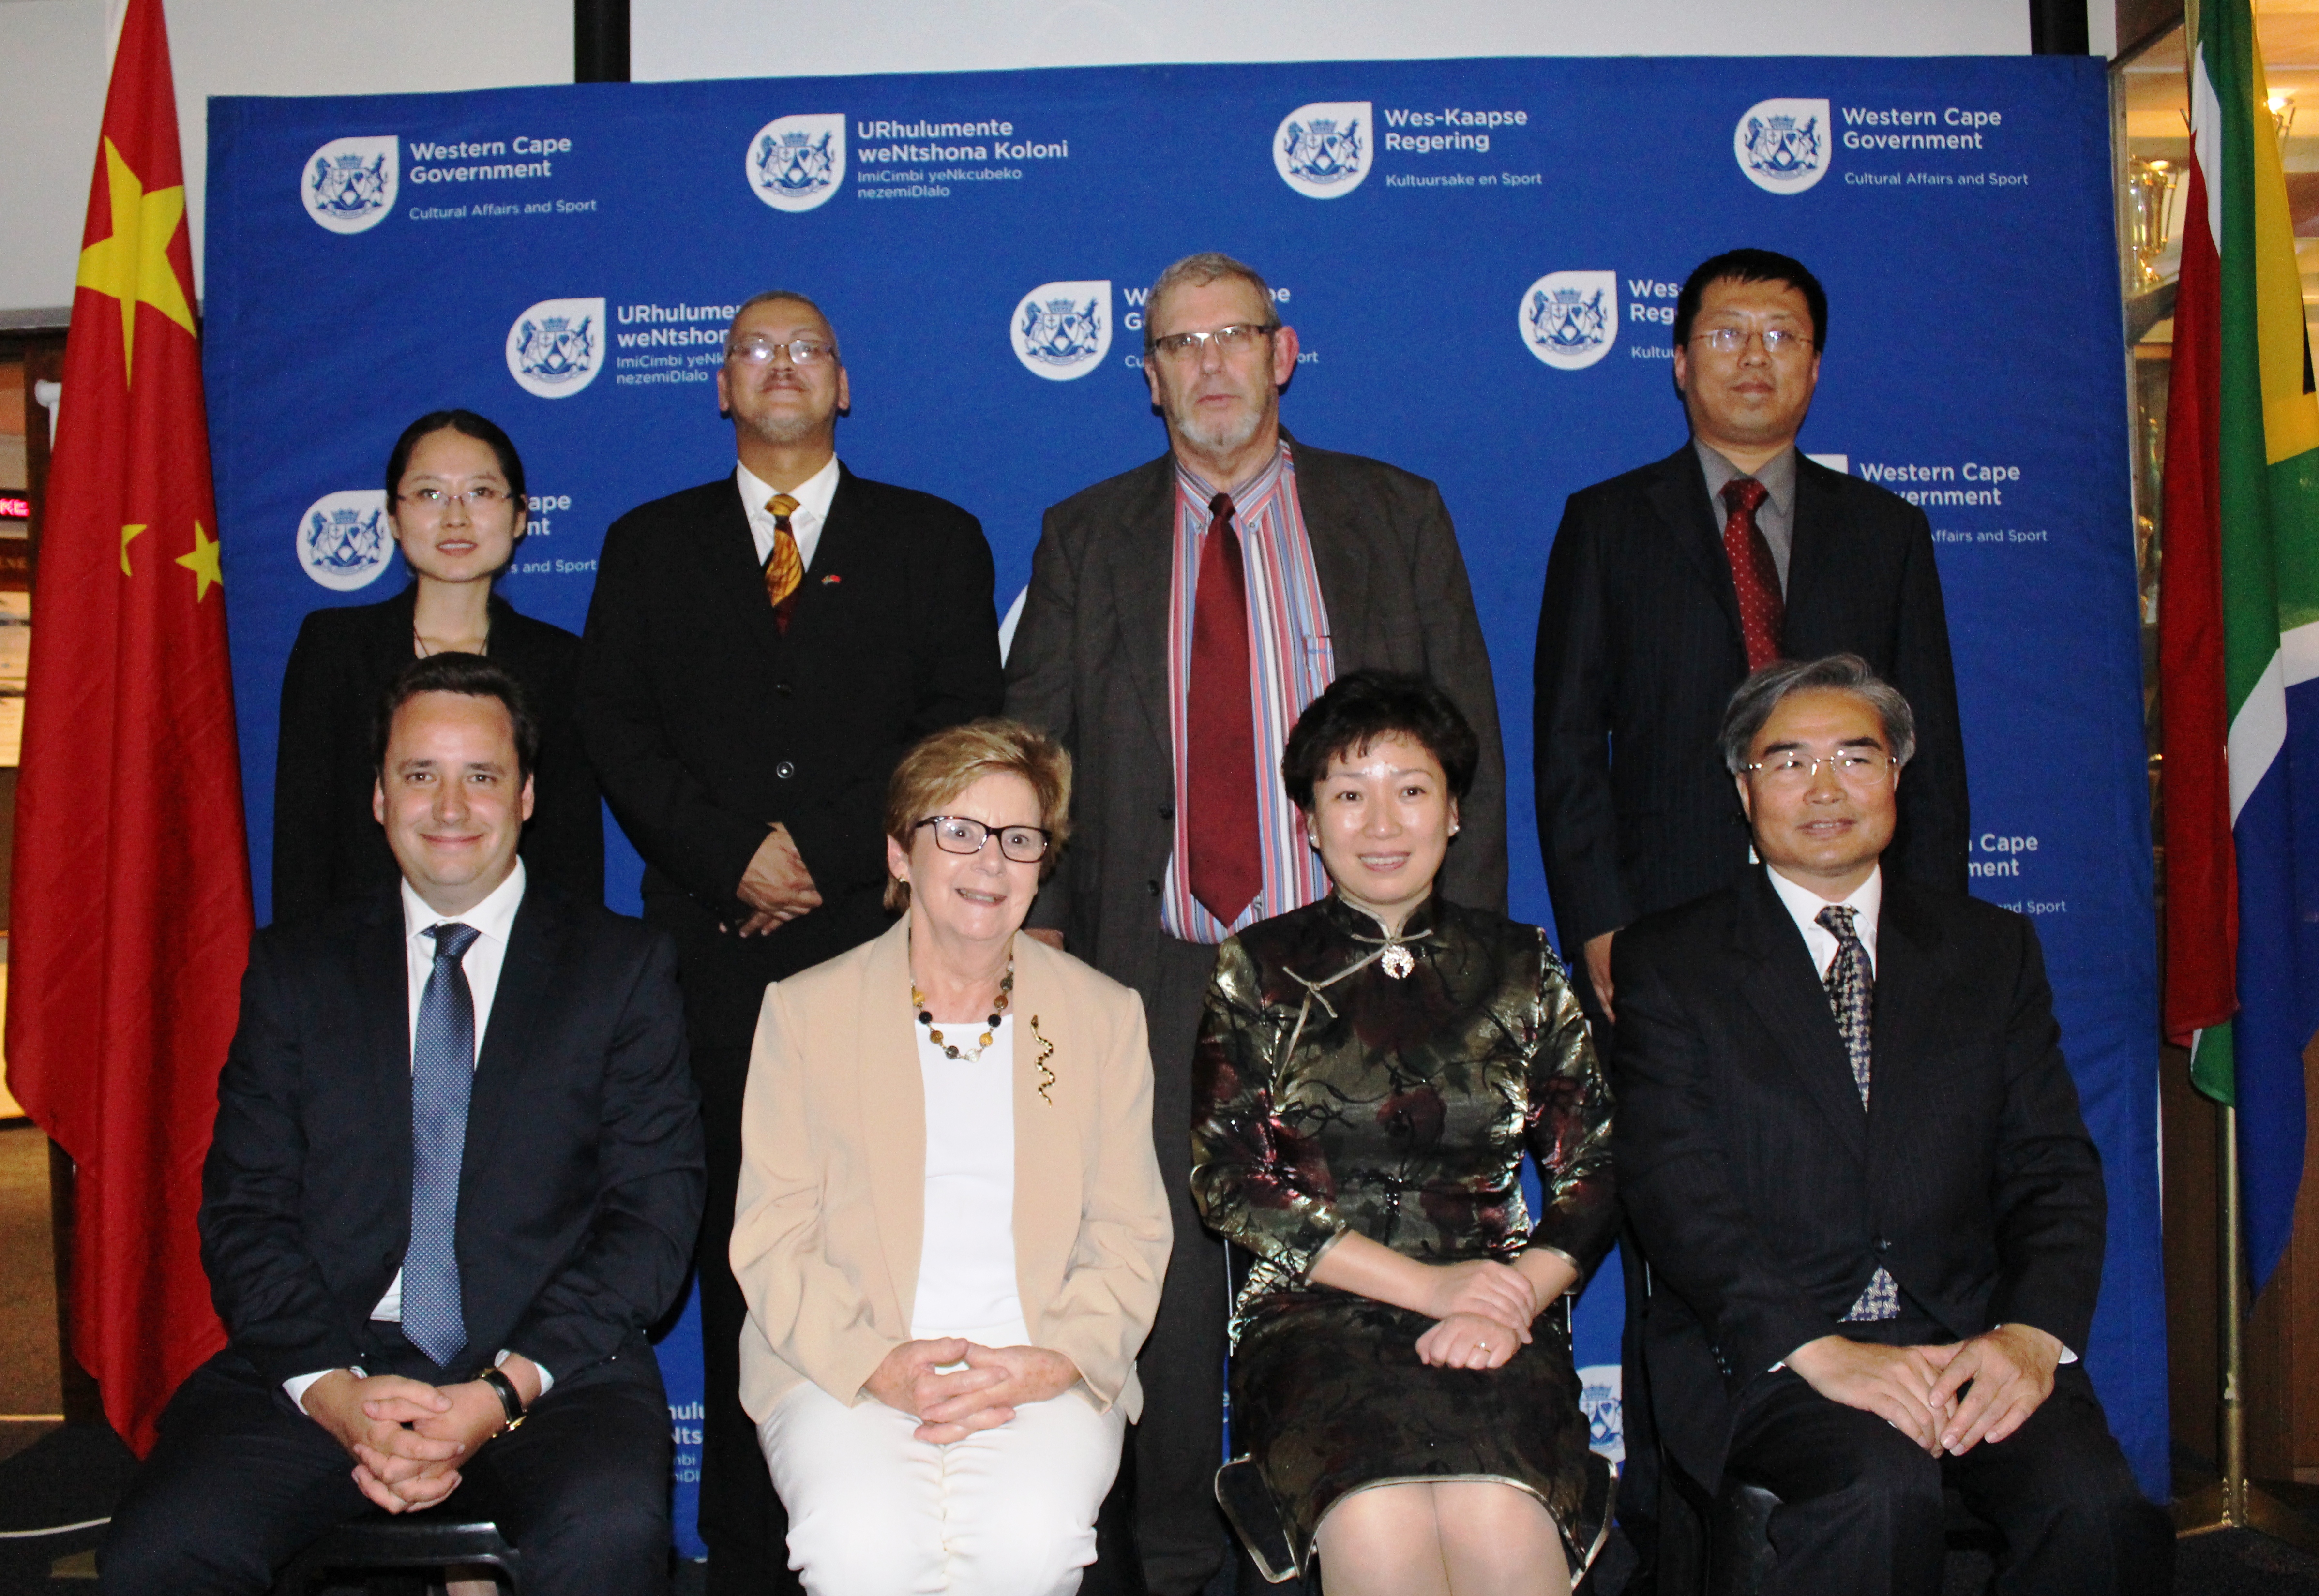 Back left: Li Xiao, Adv. Lyndon Bouah, Adv. Brent Gerber, Zhang Yong  Front: Gareth Bloor, Belinda Walker, Luan Xin (Vice Mayor of Qingdao) and Lian Shugen (Consul General of China).